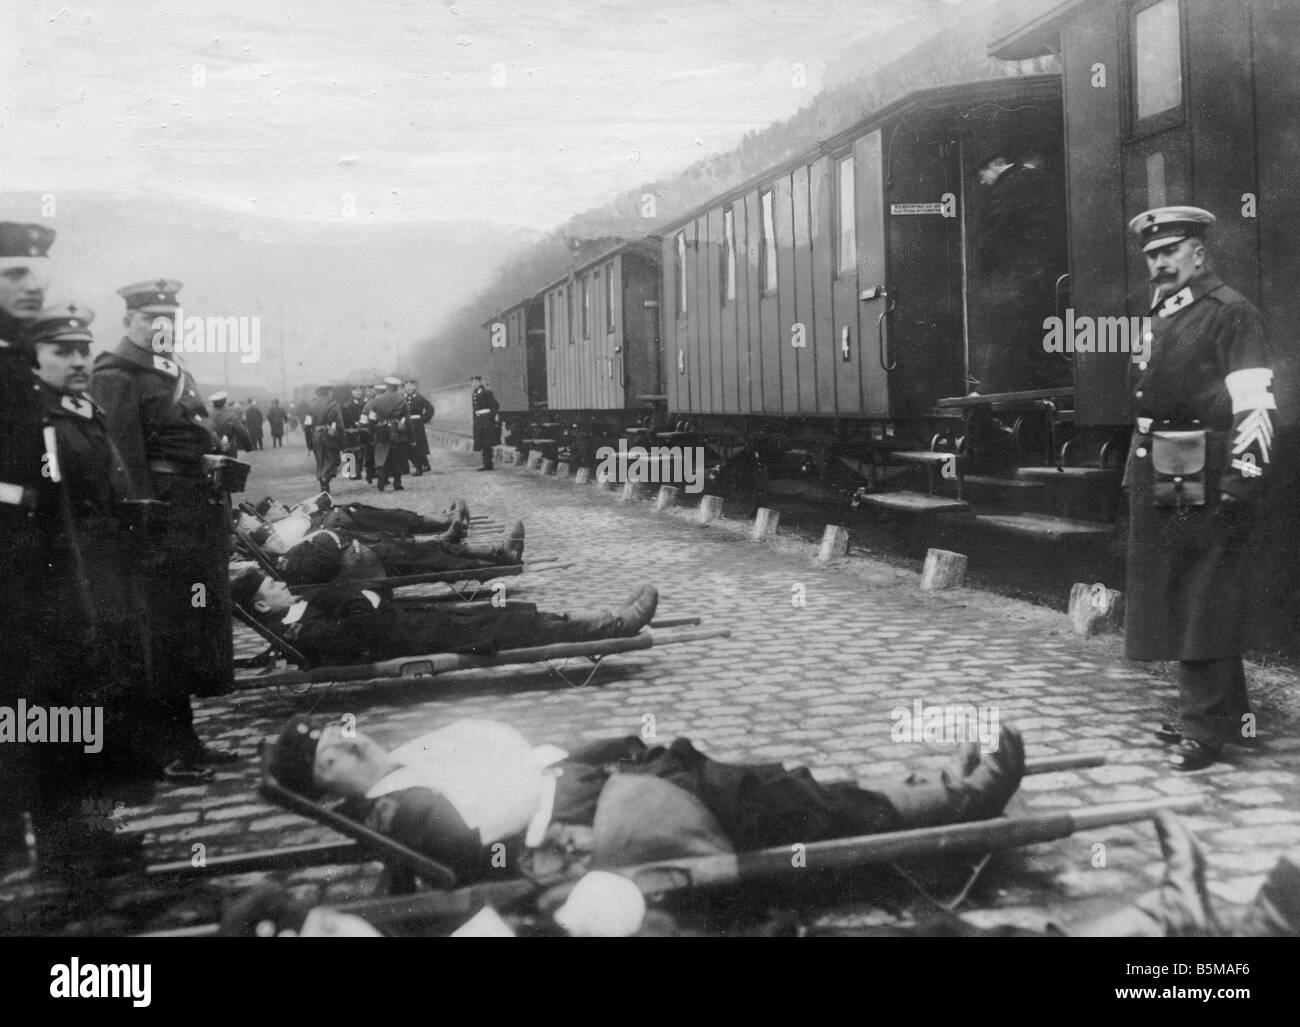 2 G55 W1 1918 21 Transport des blessés allemands WWI 1918 Histoire Première Guerre mondiale, Front de l'Ouest Transport de soldats allemands blessés bof Banque D'Images